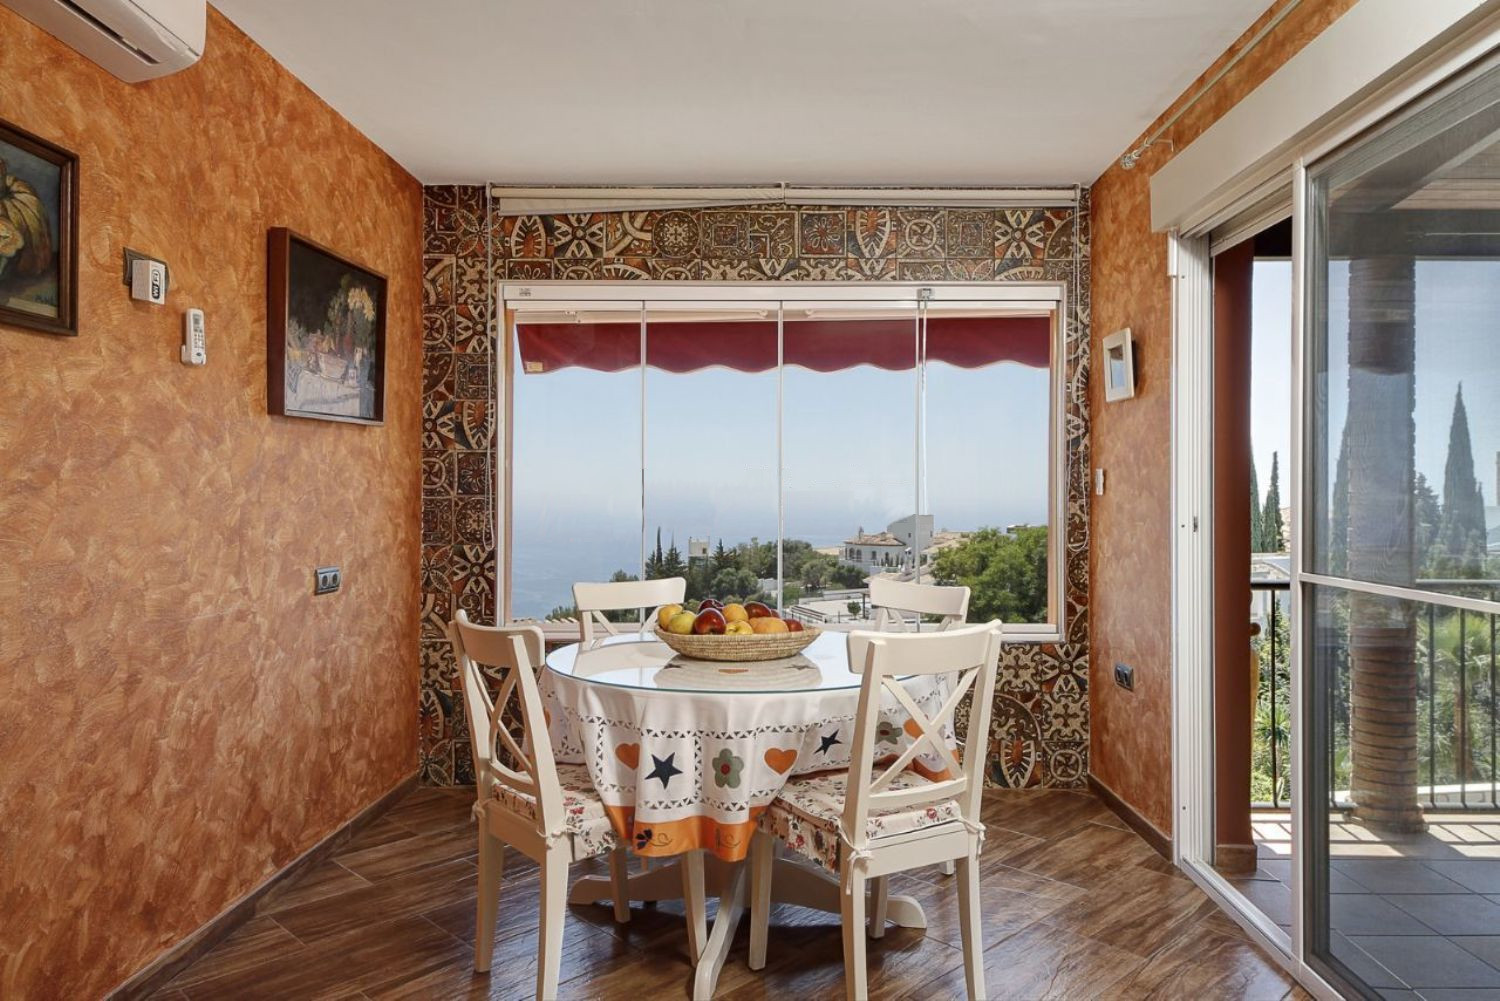 Villa de luxe à vendre dans l'urbanisation Monte de Los Almendros à Salobreña